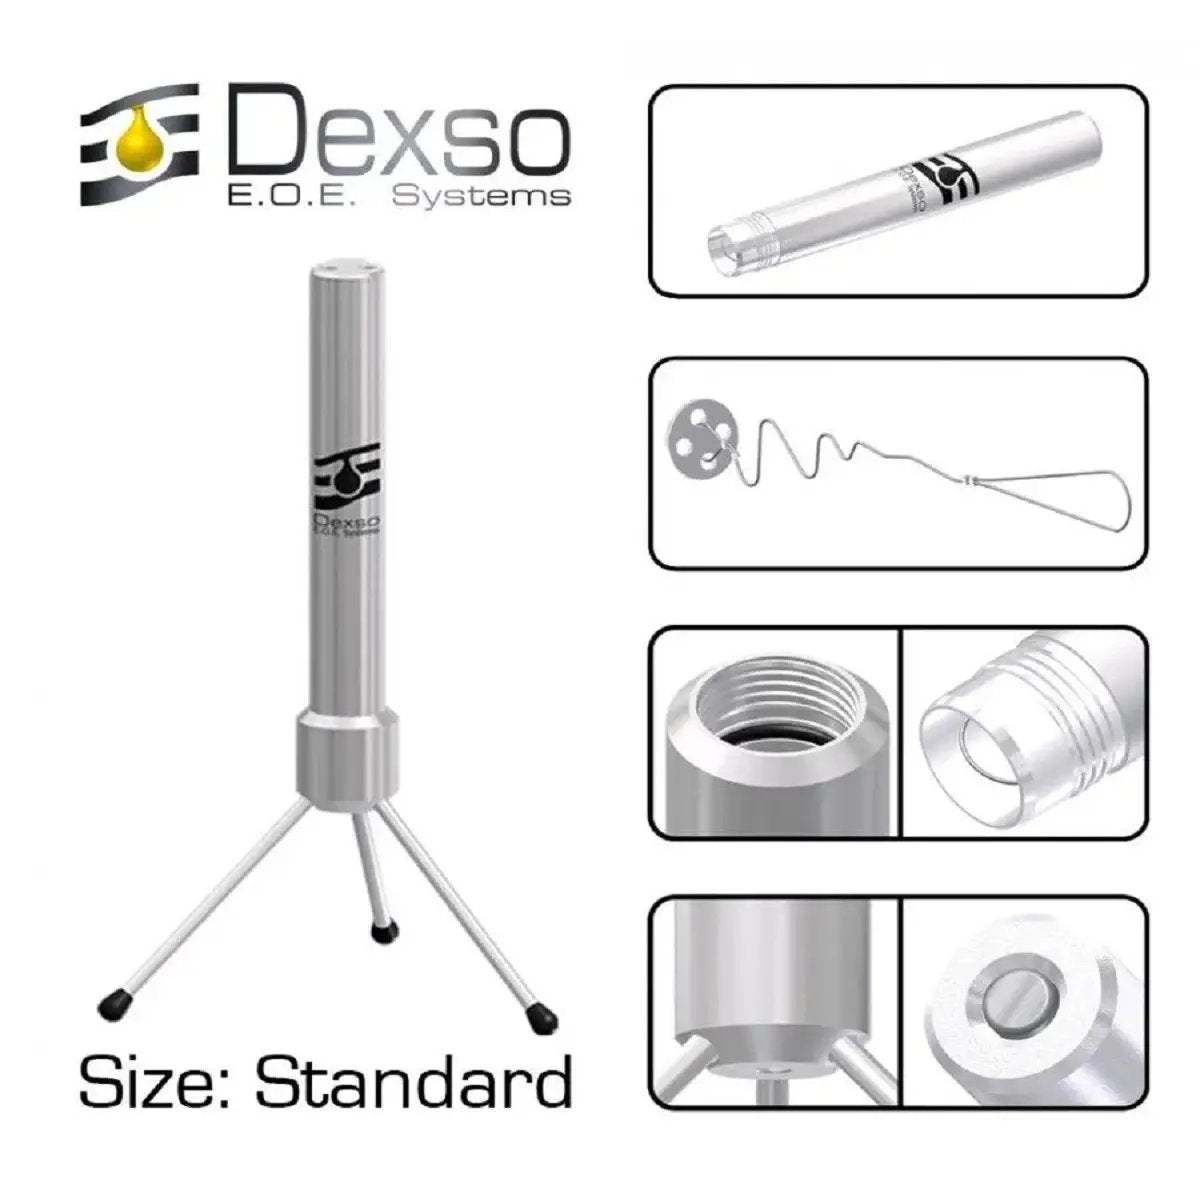 Dexso EOE - Extracteur standard